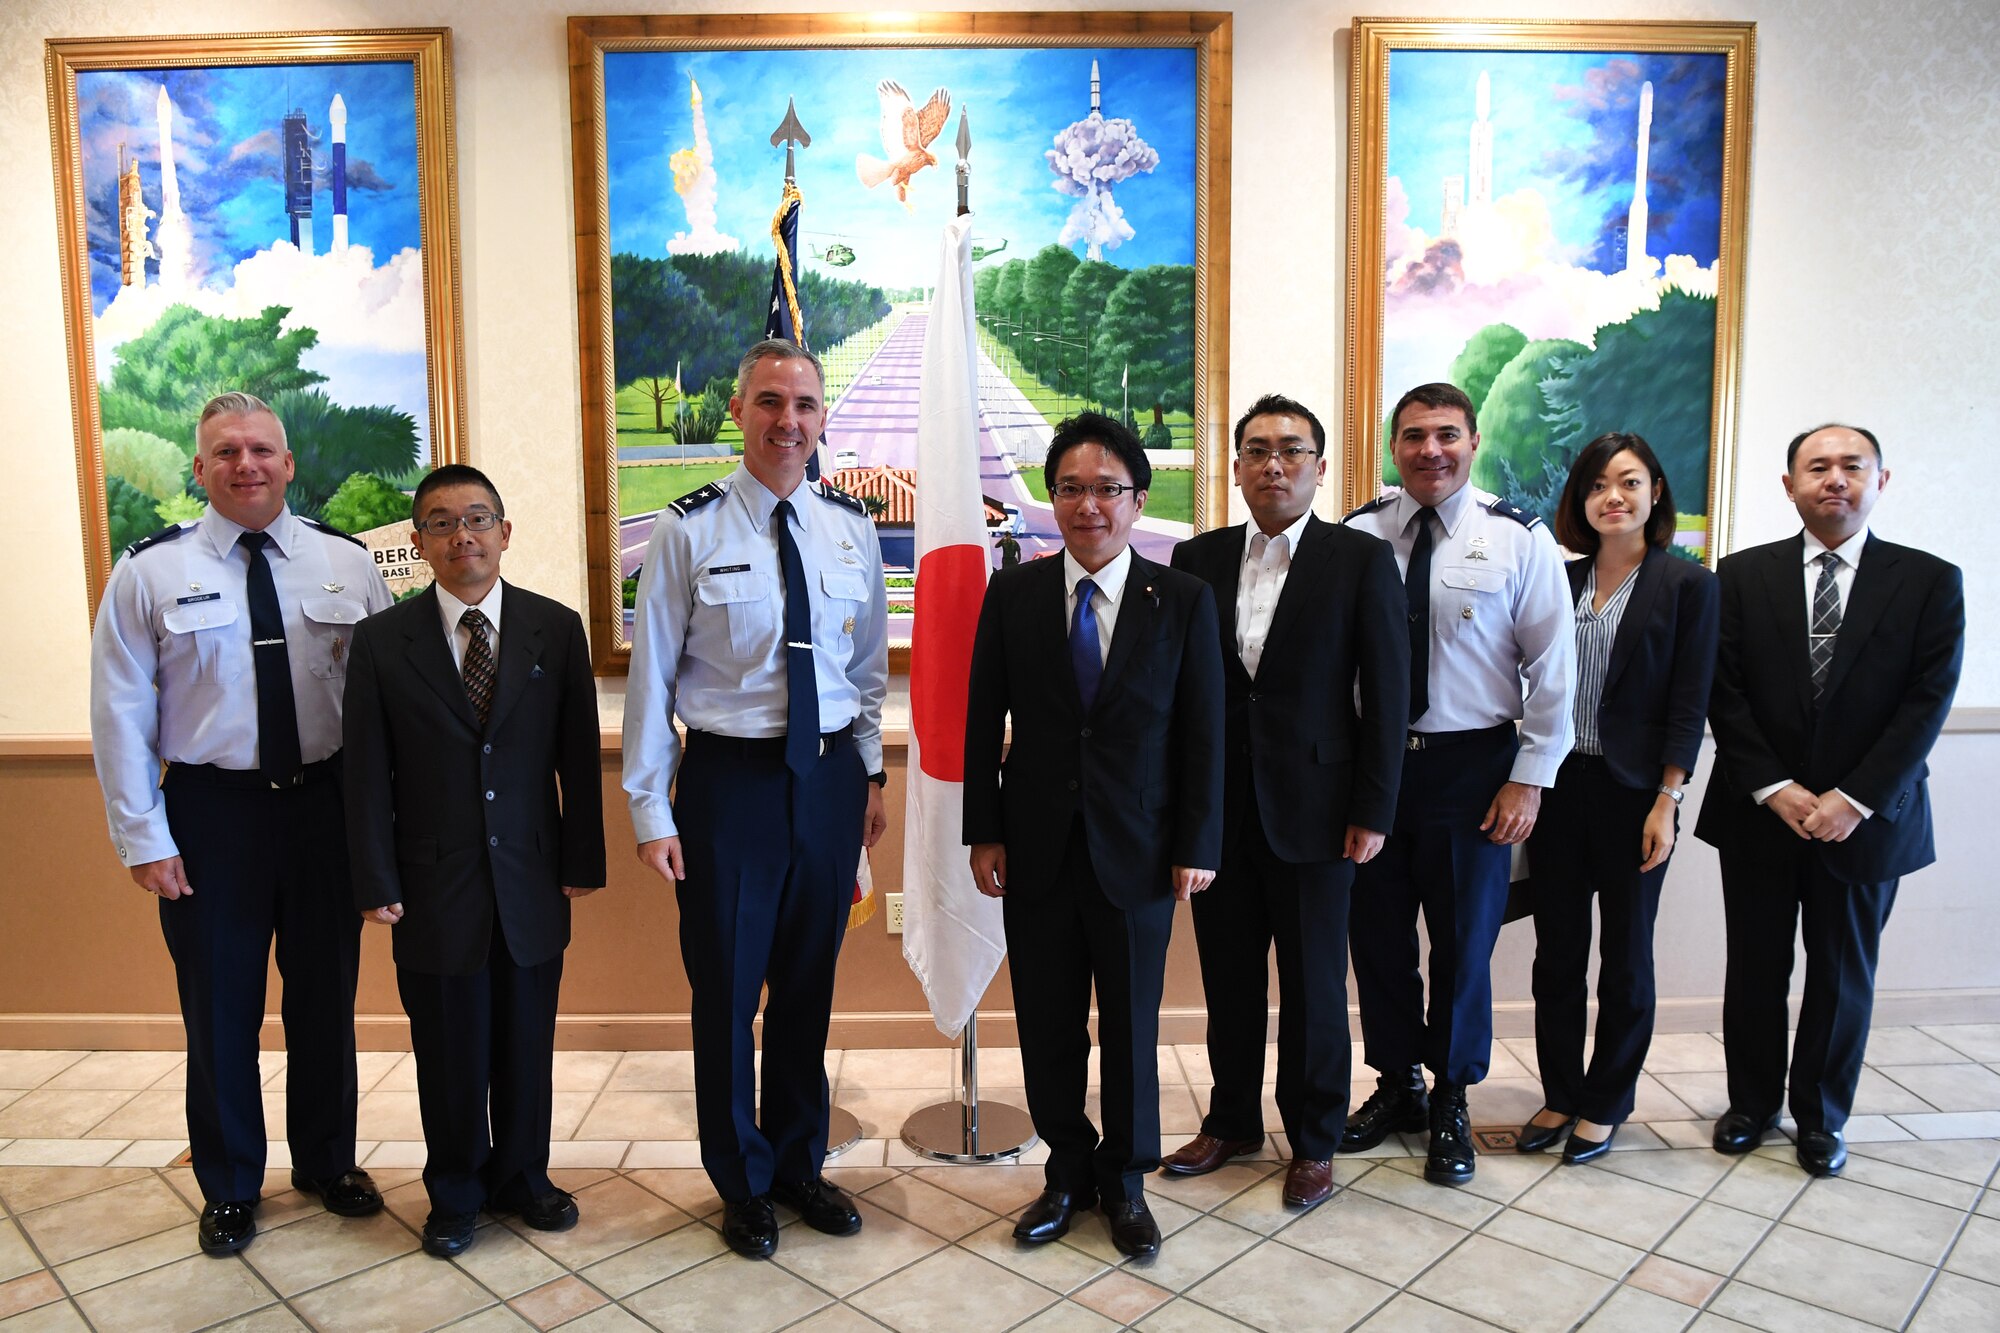 Japanese Vice Minister of Defense visits Vandenberg